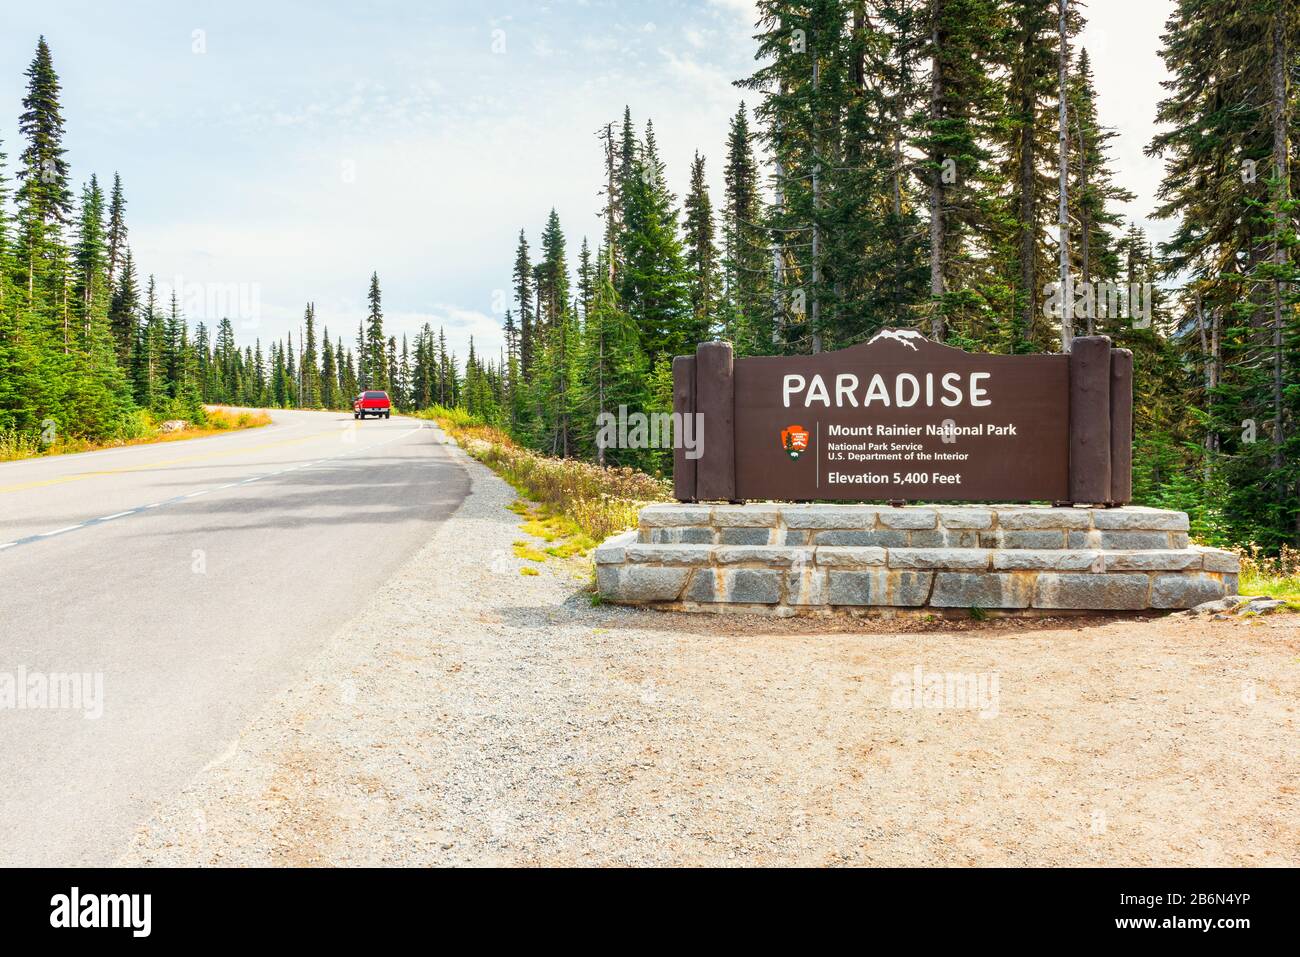 Eintrittsschild zum Paradise Area im Mount Rainier National Park, Washington, USA. Das Paradies ist das beliebteste Ziel im Park. Stockfoto